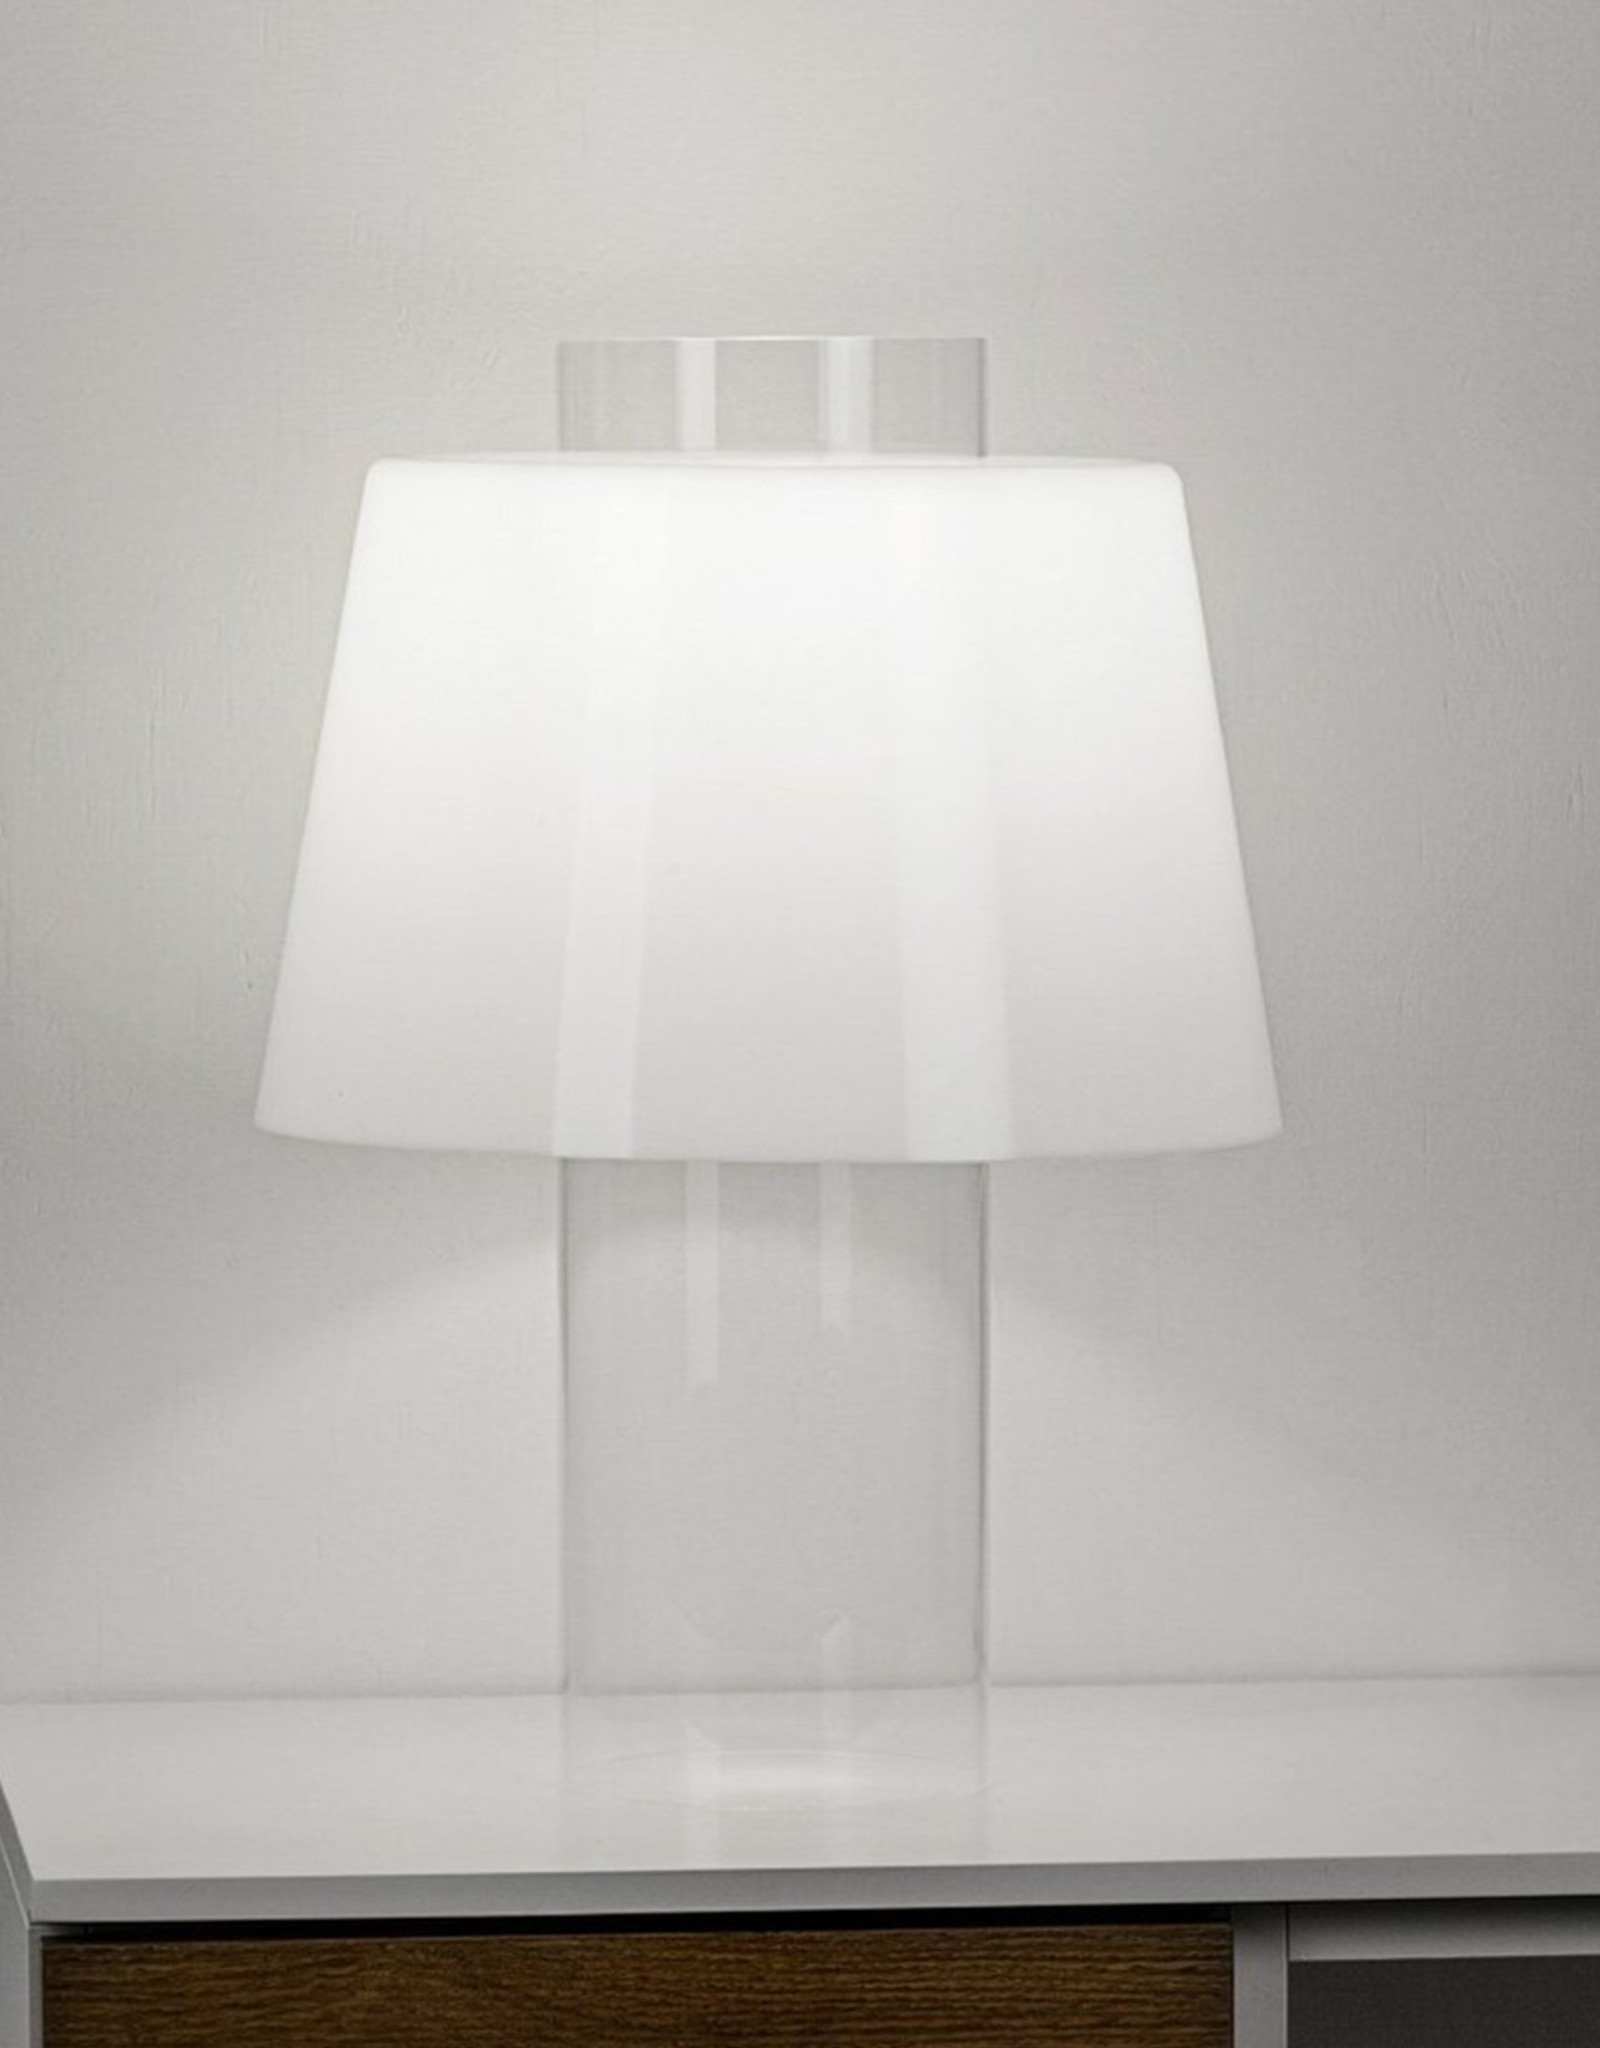 Modern Art table light by Yki Nummi